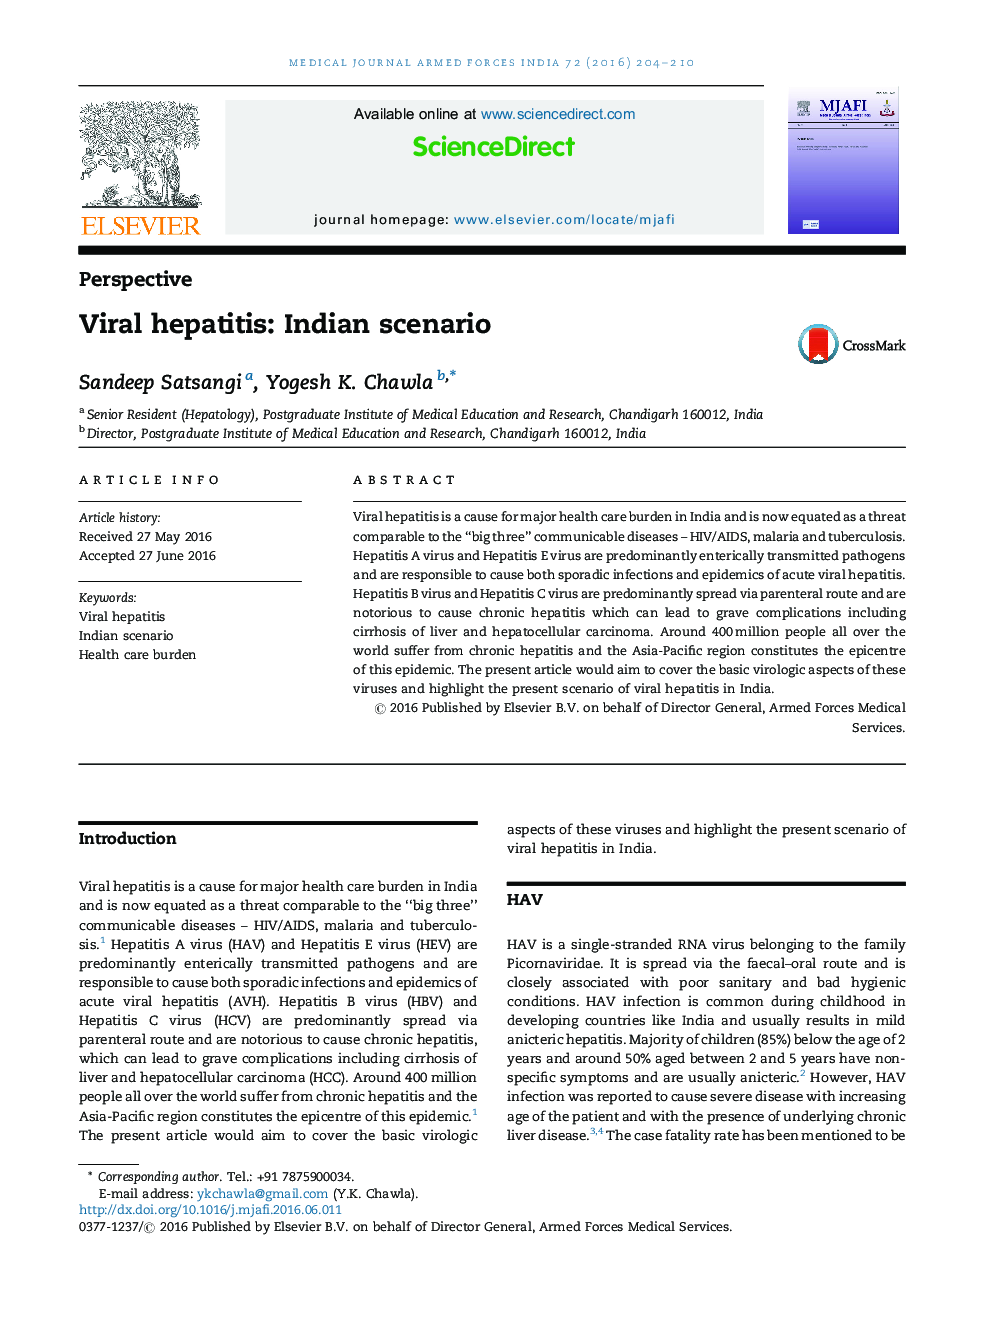 Viral hepatitis: Indian scenario